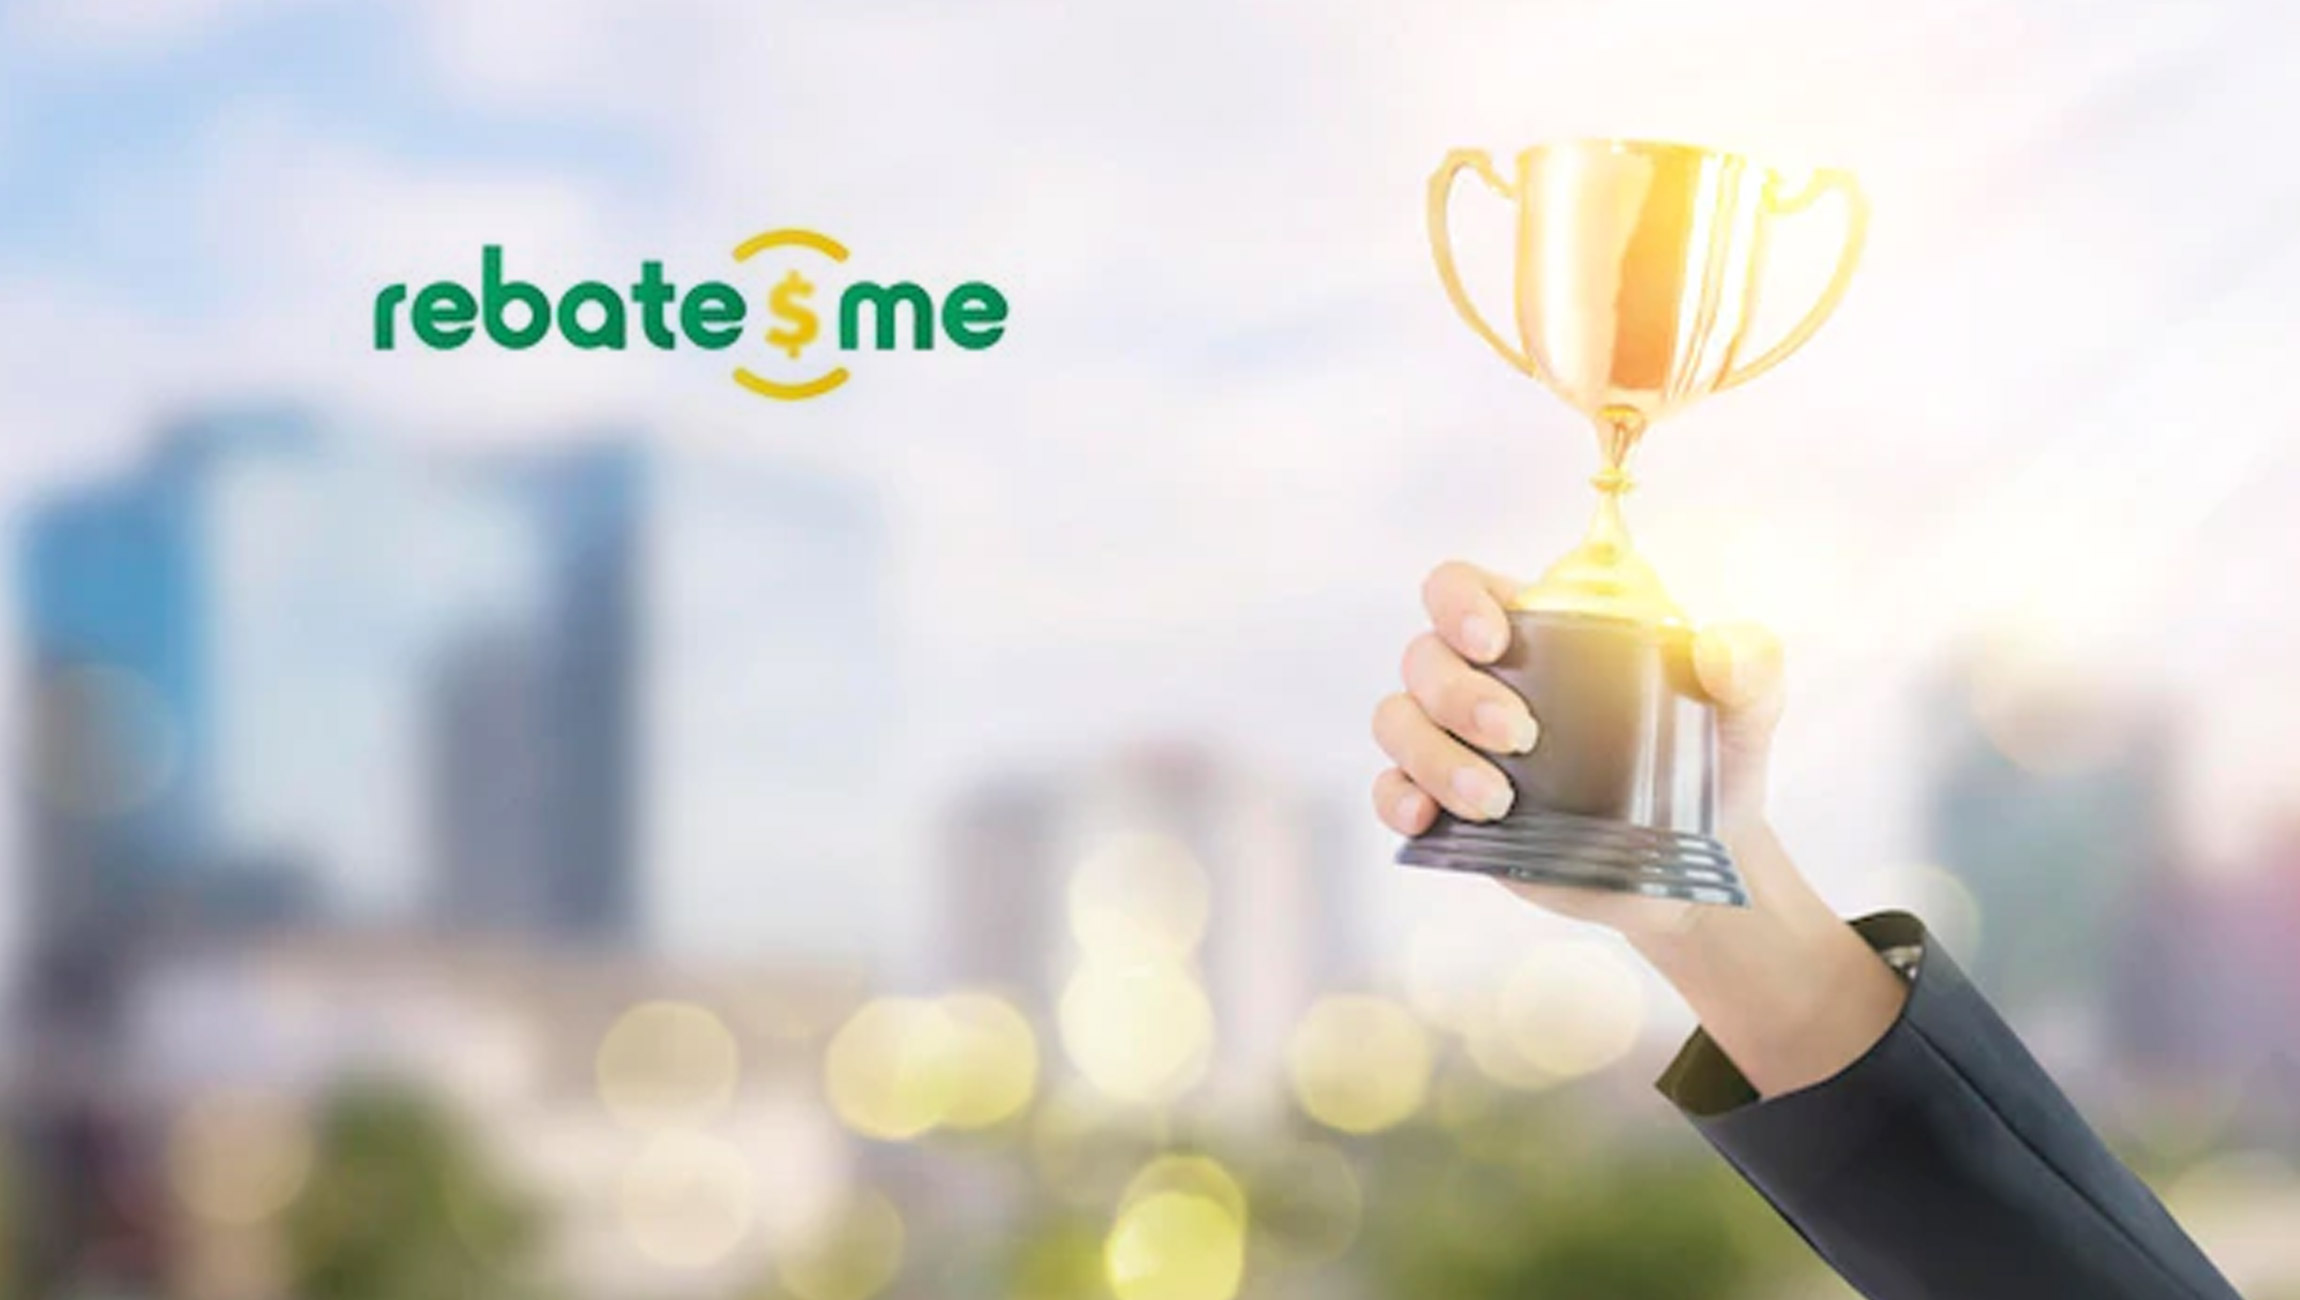 RebatesMe is a 2022 Golden Link Award Finalist